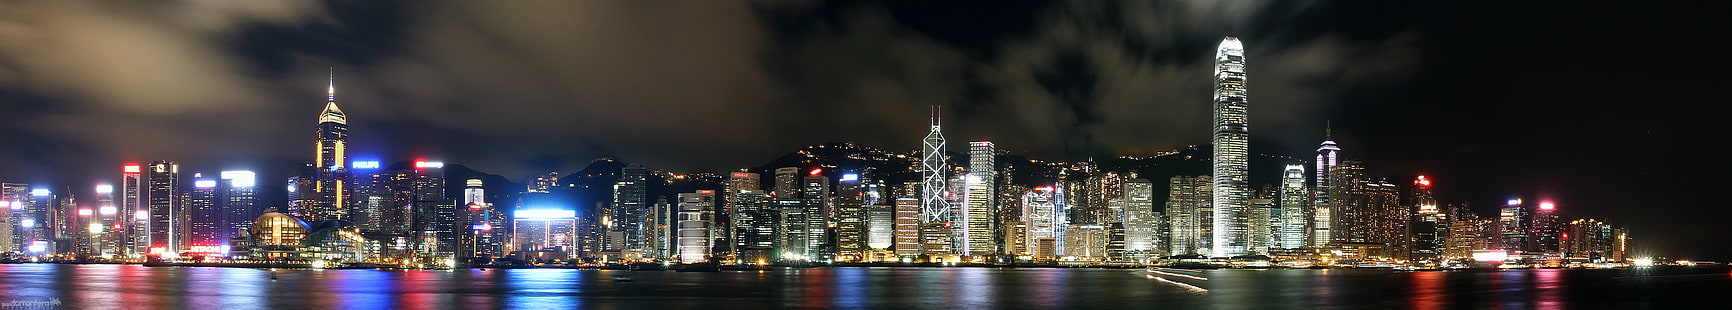 photographie panoramique de bâtiments de nuit, Hong Kong, Hong Kong, nocturna de Hong, Hong Kong, panorama, prise de vue, photographie, bâtiments, nuit, asie, chine, panoramique, paysage, ville, horizon, rio, rivière, eau,réflexions, urbain, étonnant, capitalisme, long, larga, vitesse, paysage urbain, urbain Skyline, gratte-ciel, scène urbaine, quartier du centre-ville, lieu célèbre, architecture, port, illuminé, Fond d'écran HD HD wallpaper